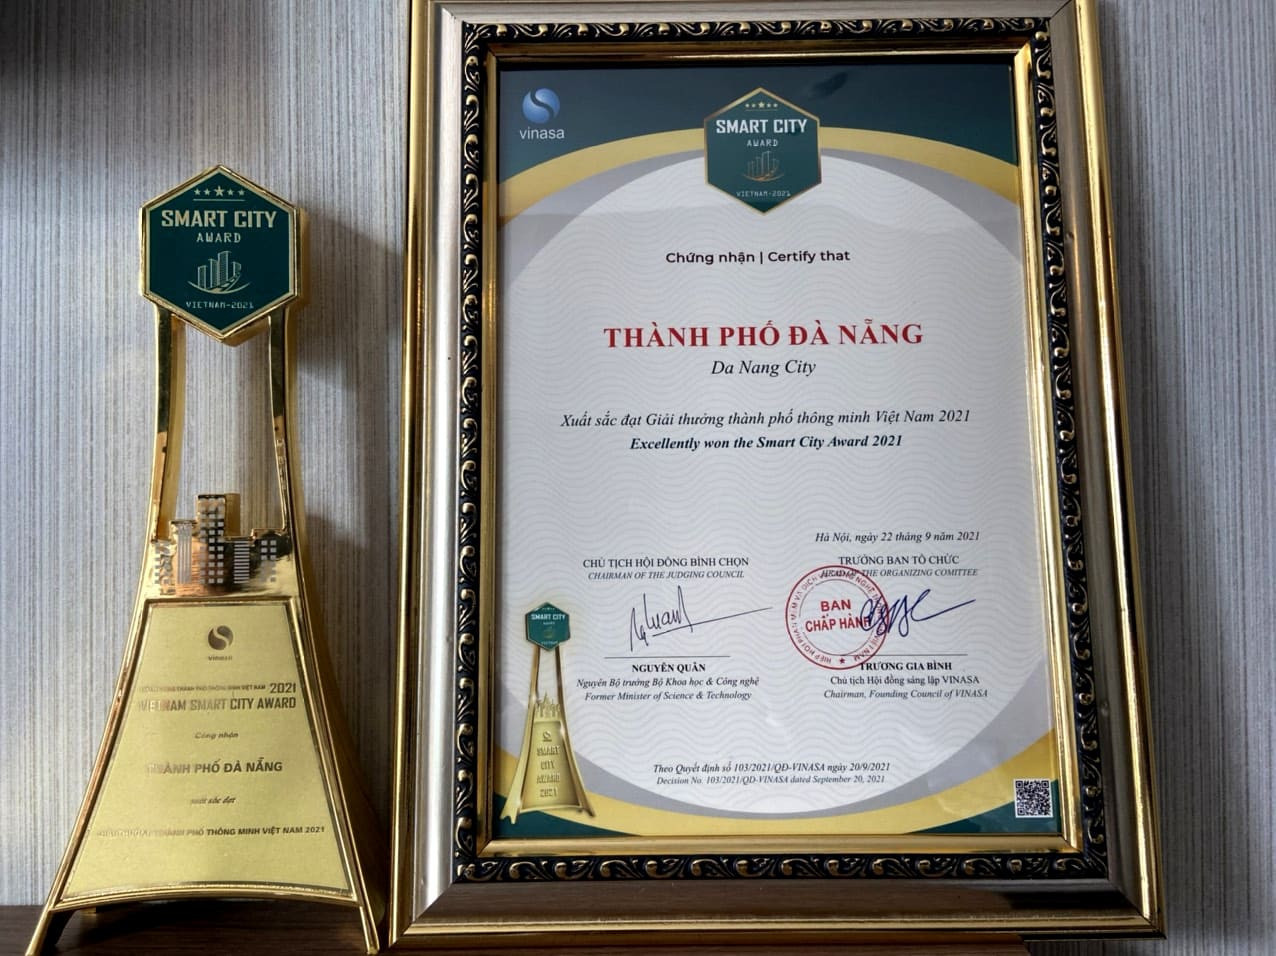 Thành phố Đà Nẵng vinh dự nhận được Giải thưởng Thành phố Thông minh Việt Nam 2021